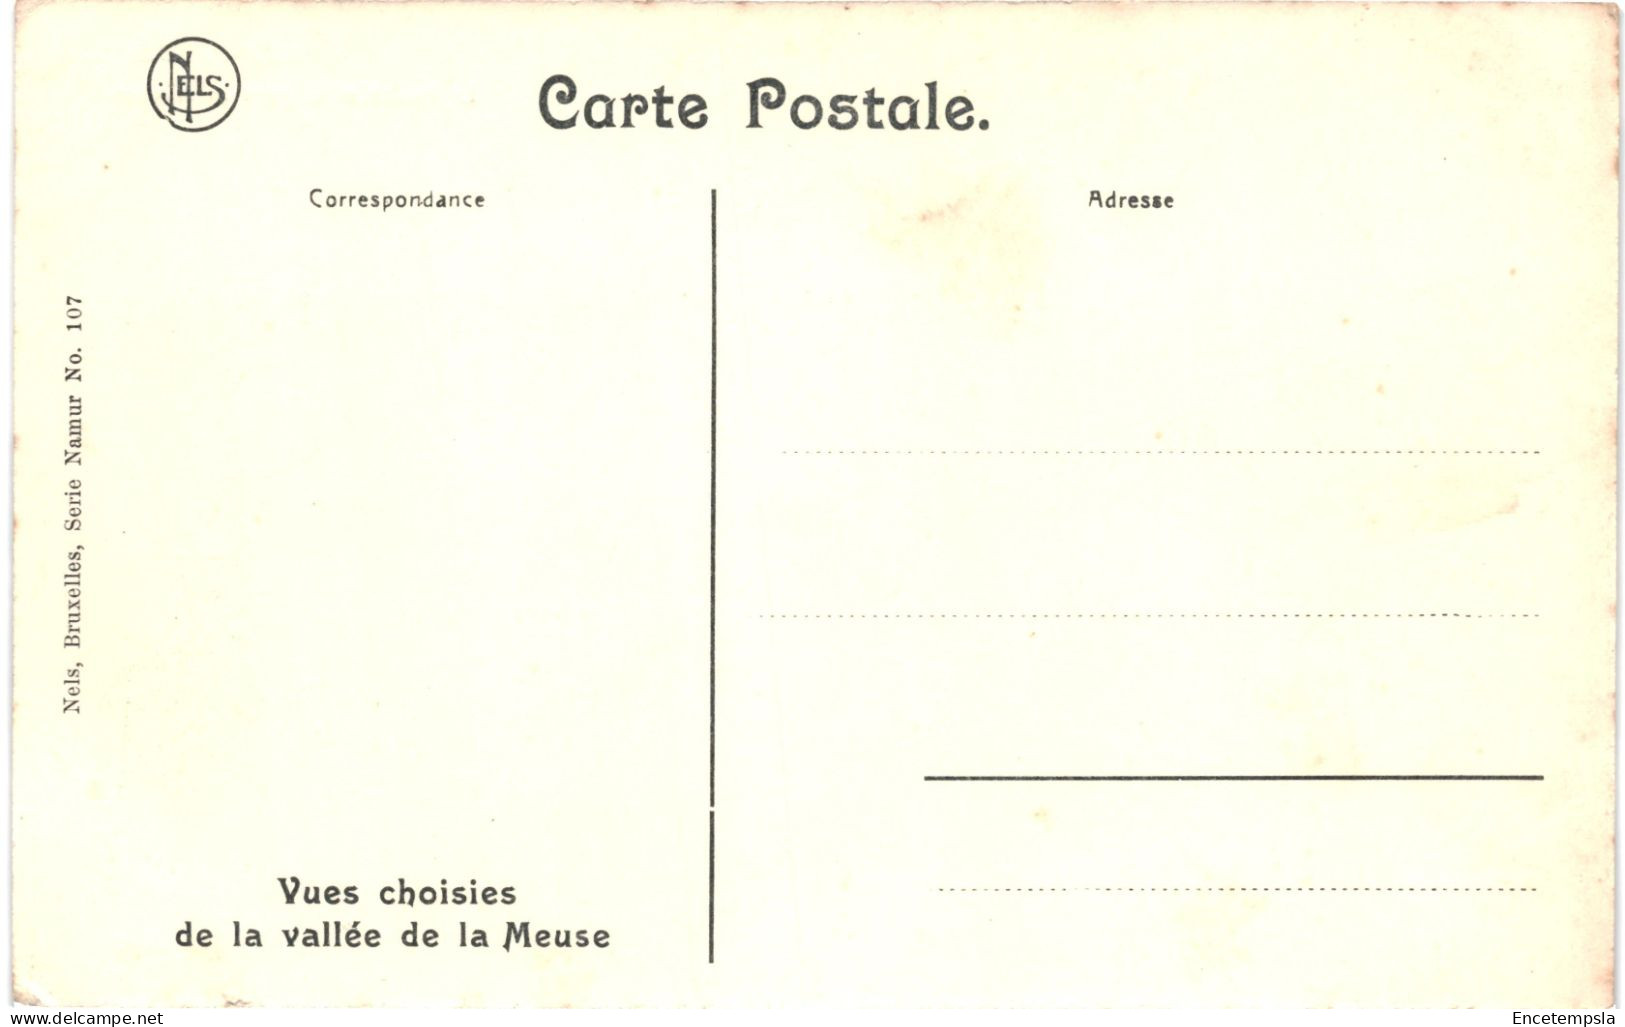 CPA Carte Postale Belgique Namur La Meuse Et Le Pont De Jambes  VM80880 - Namur